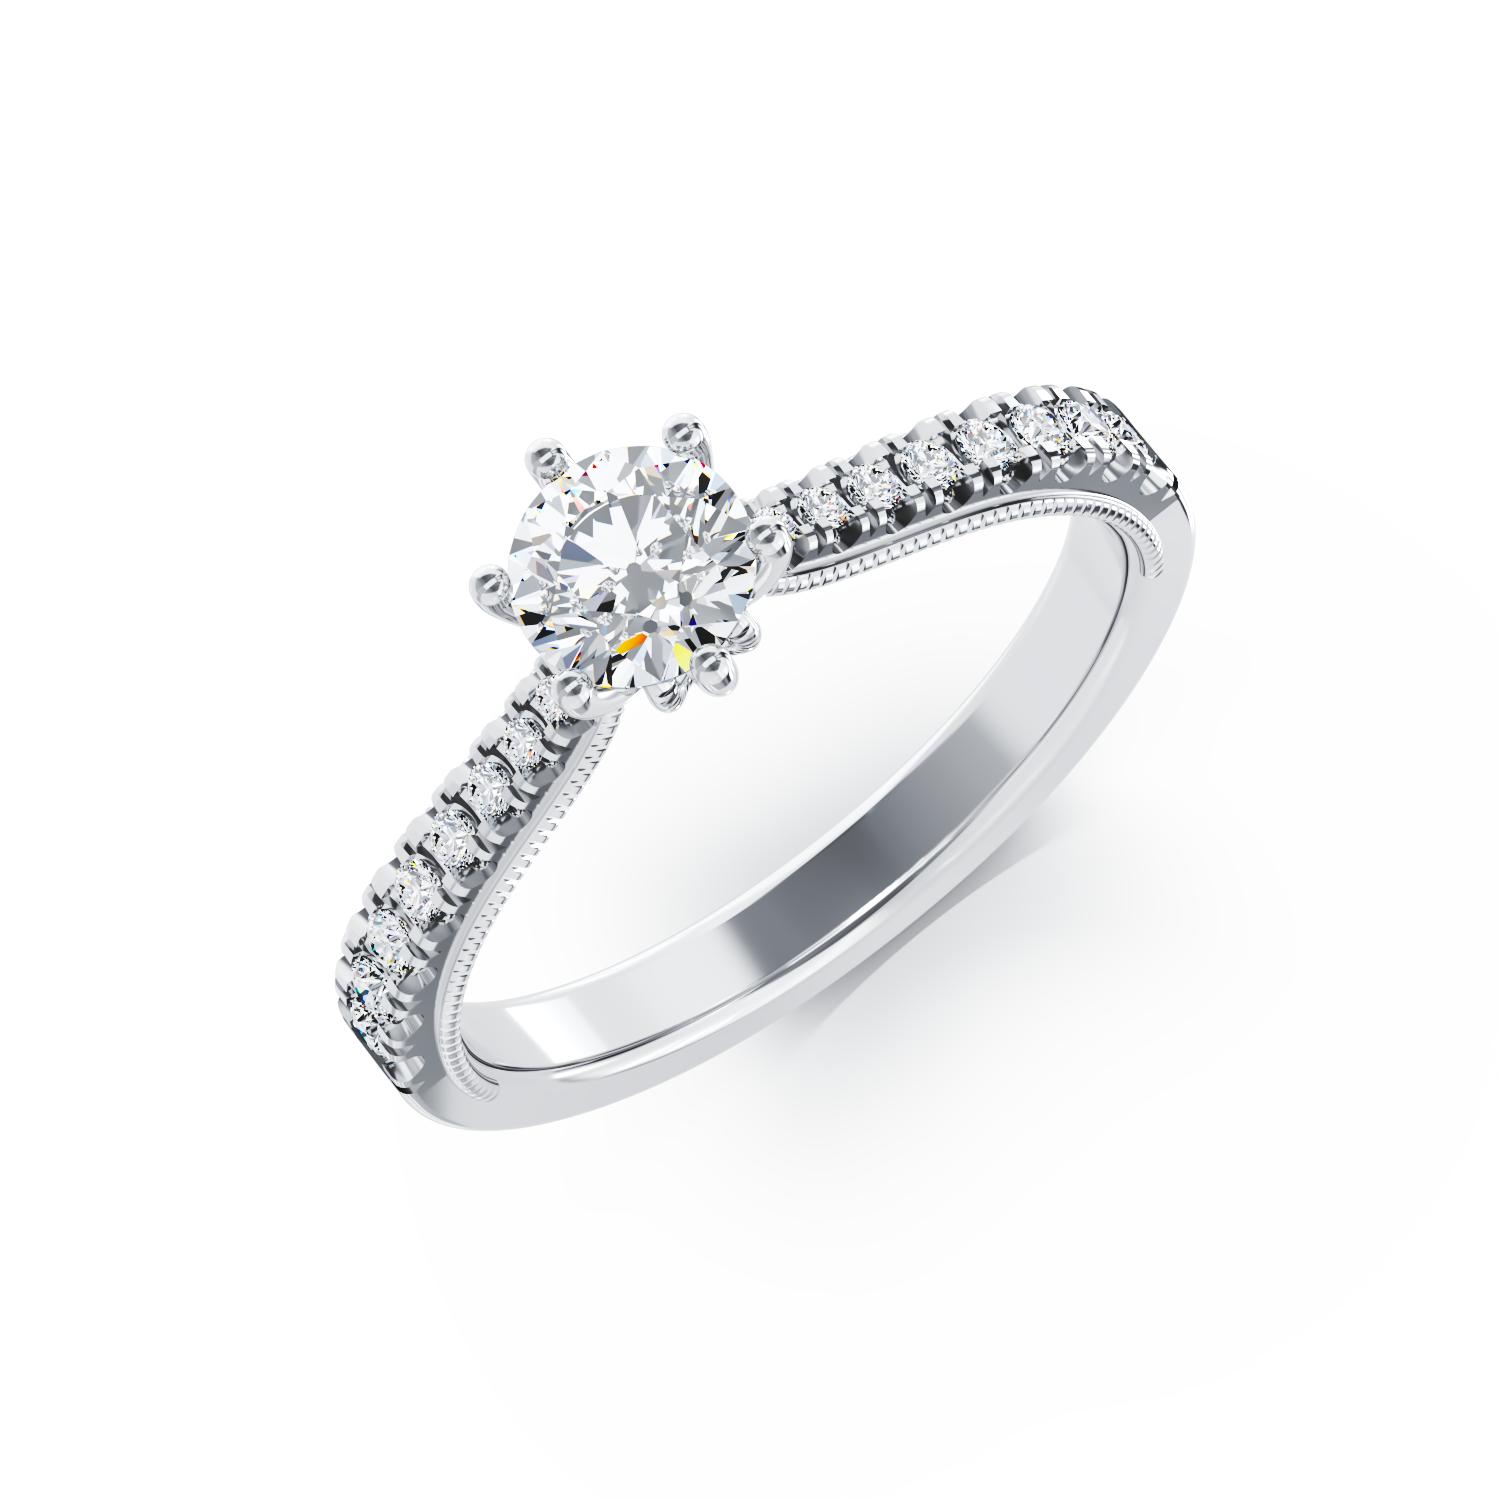 Eljegyzési gyűrű 18K-os fehér aranyból 0,15ct gyémánttal és 0,18ct gyémánttal. Gramm: 2,39